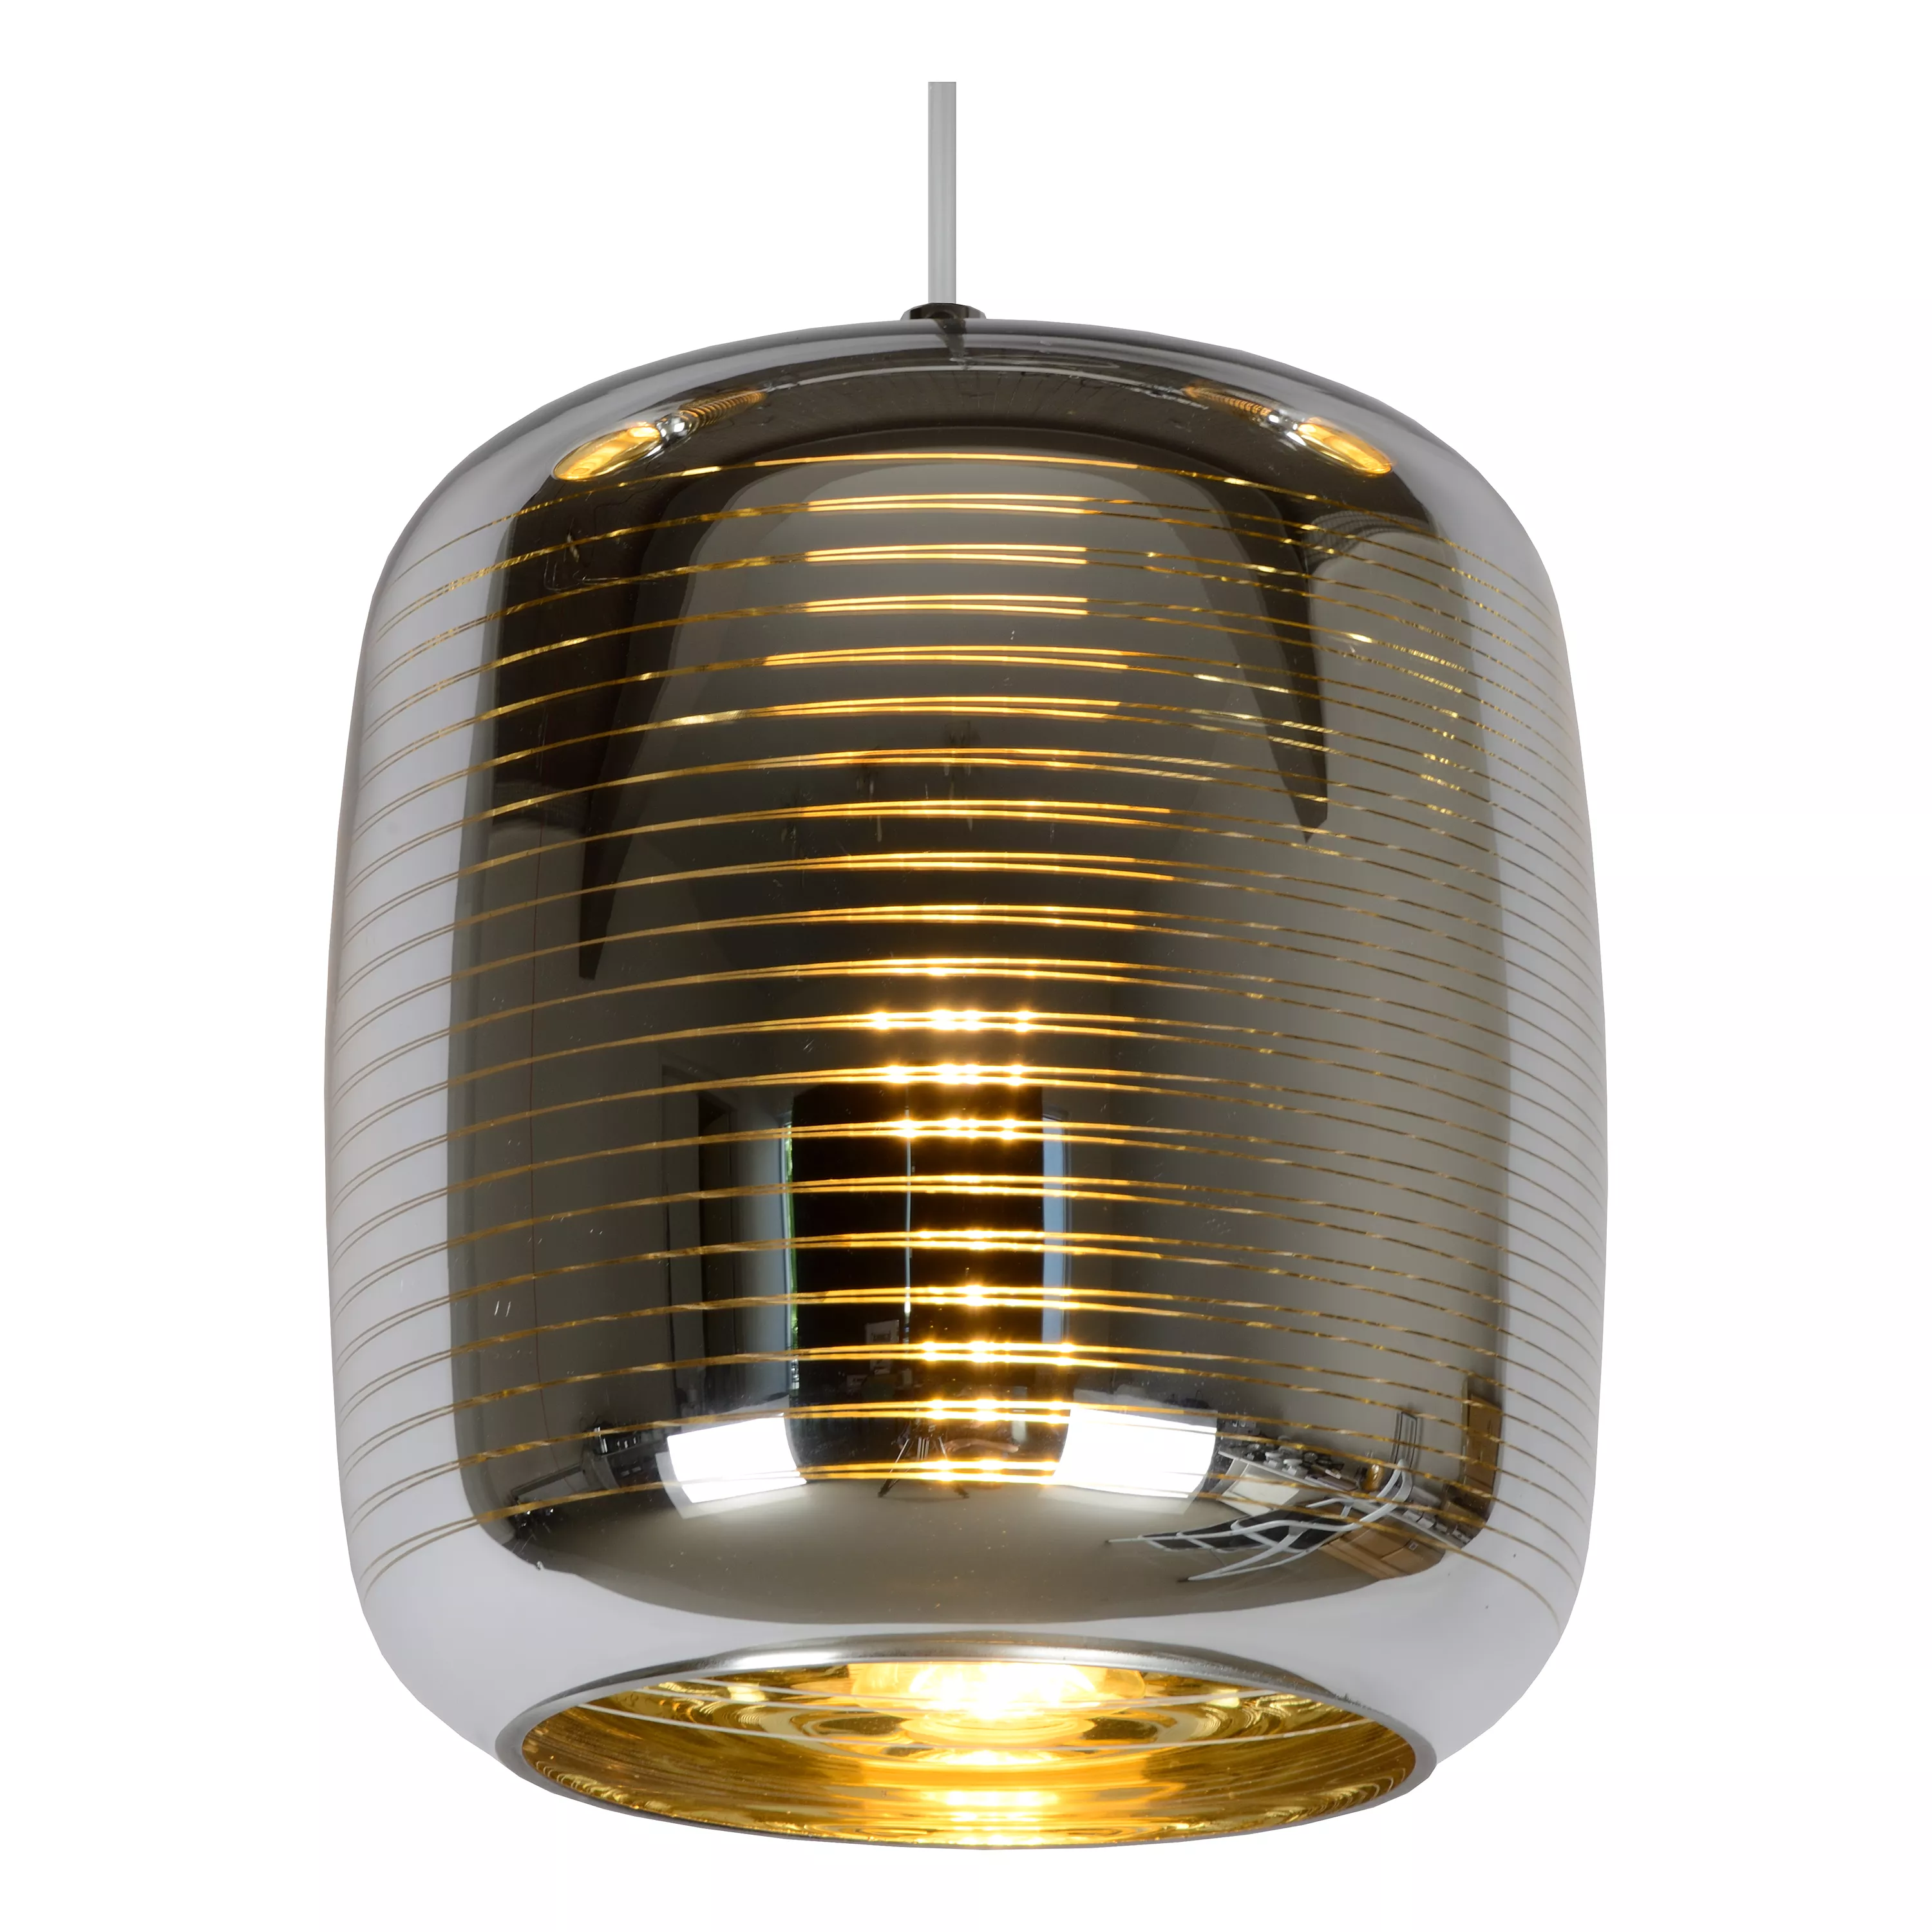 Luxusné závesné svietidlo Eryn v kombinácii zlatej farby a chrómu s pruhovaným vzorom.